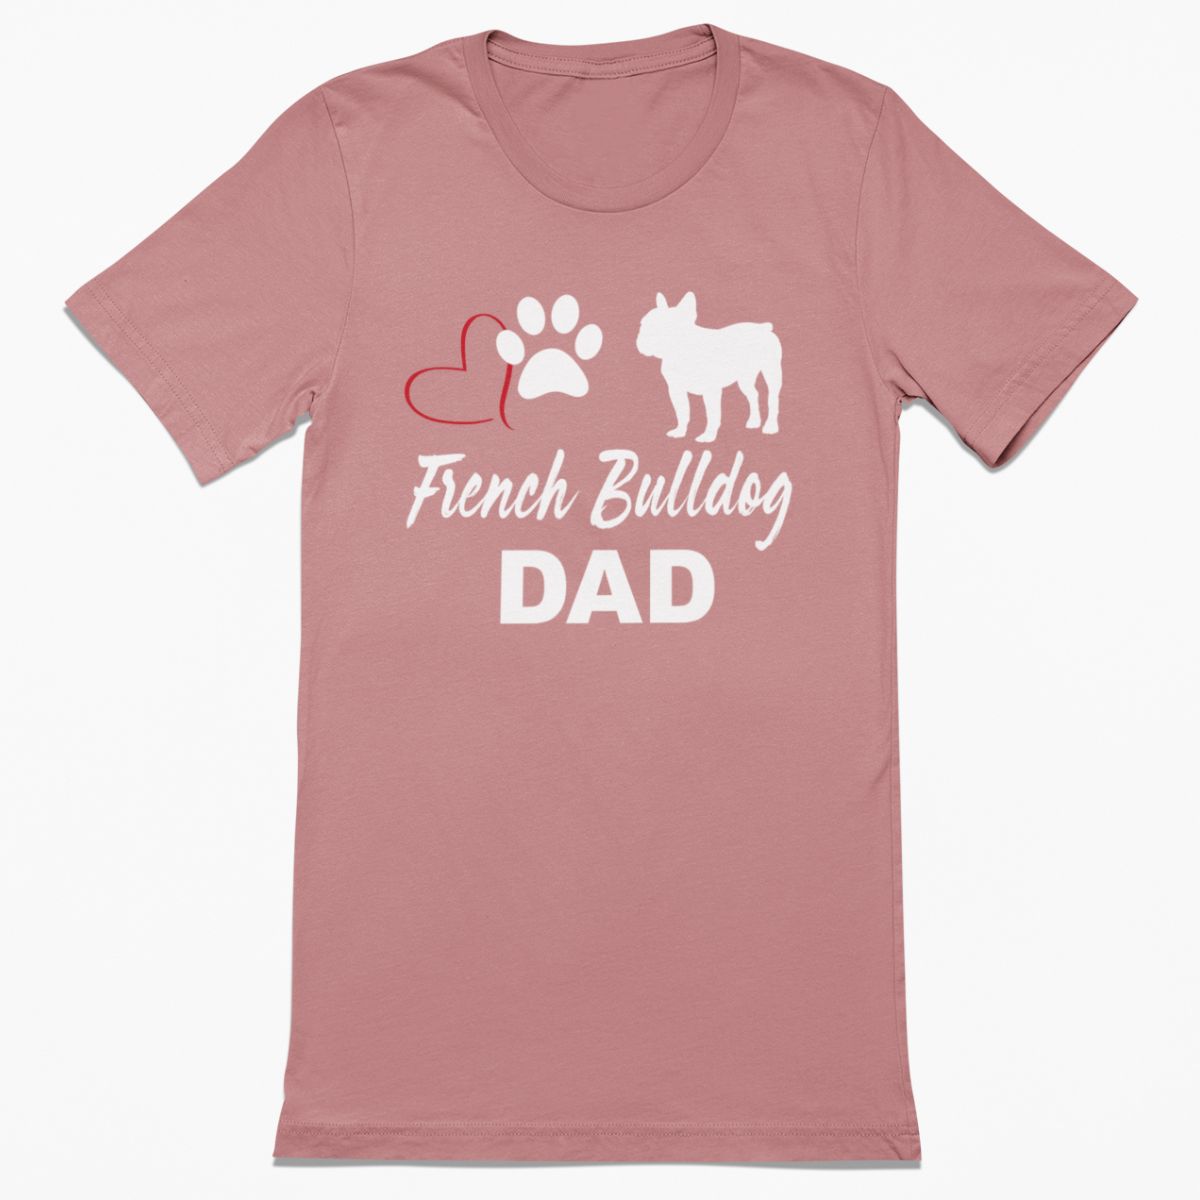 French Bulldog Dad Shirt